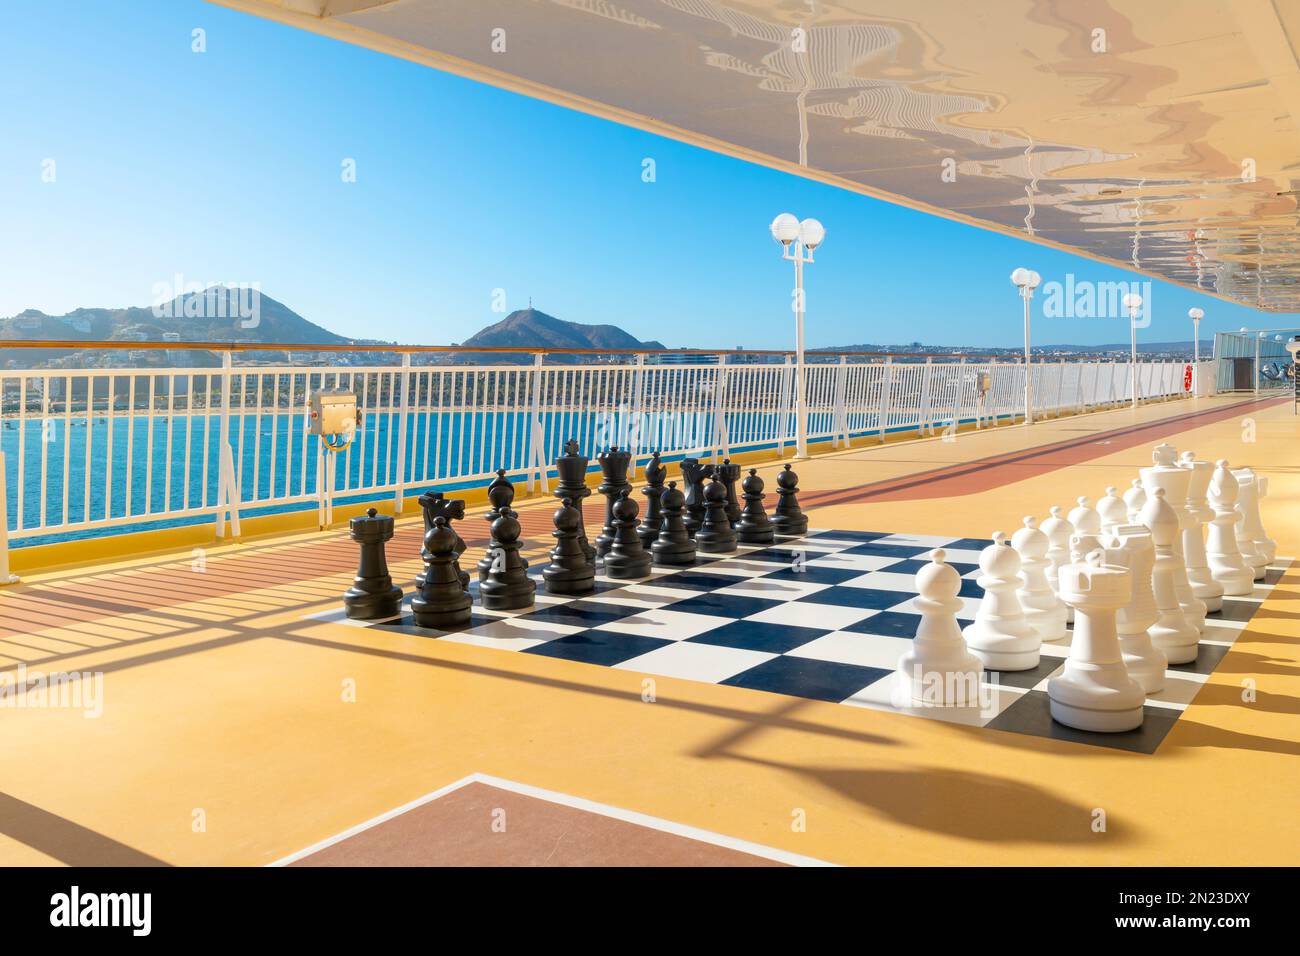 Un grand échiquier géant ou un échiquier avec des pièces d'échecs noires et blanches installé sur le pont d'un grand bateau de croisière à Cabo San Lucas, au Mexique. Banque D'Images